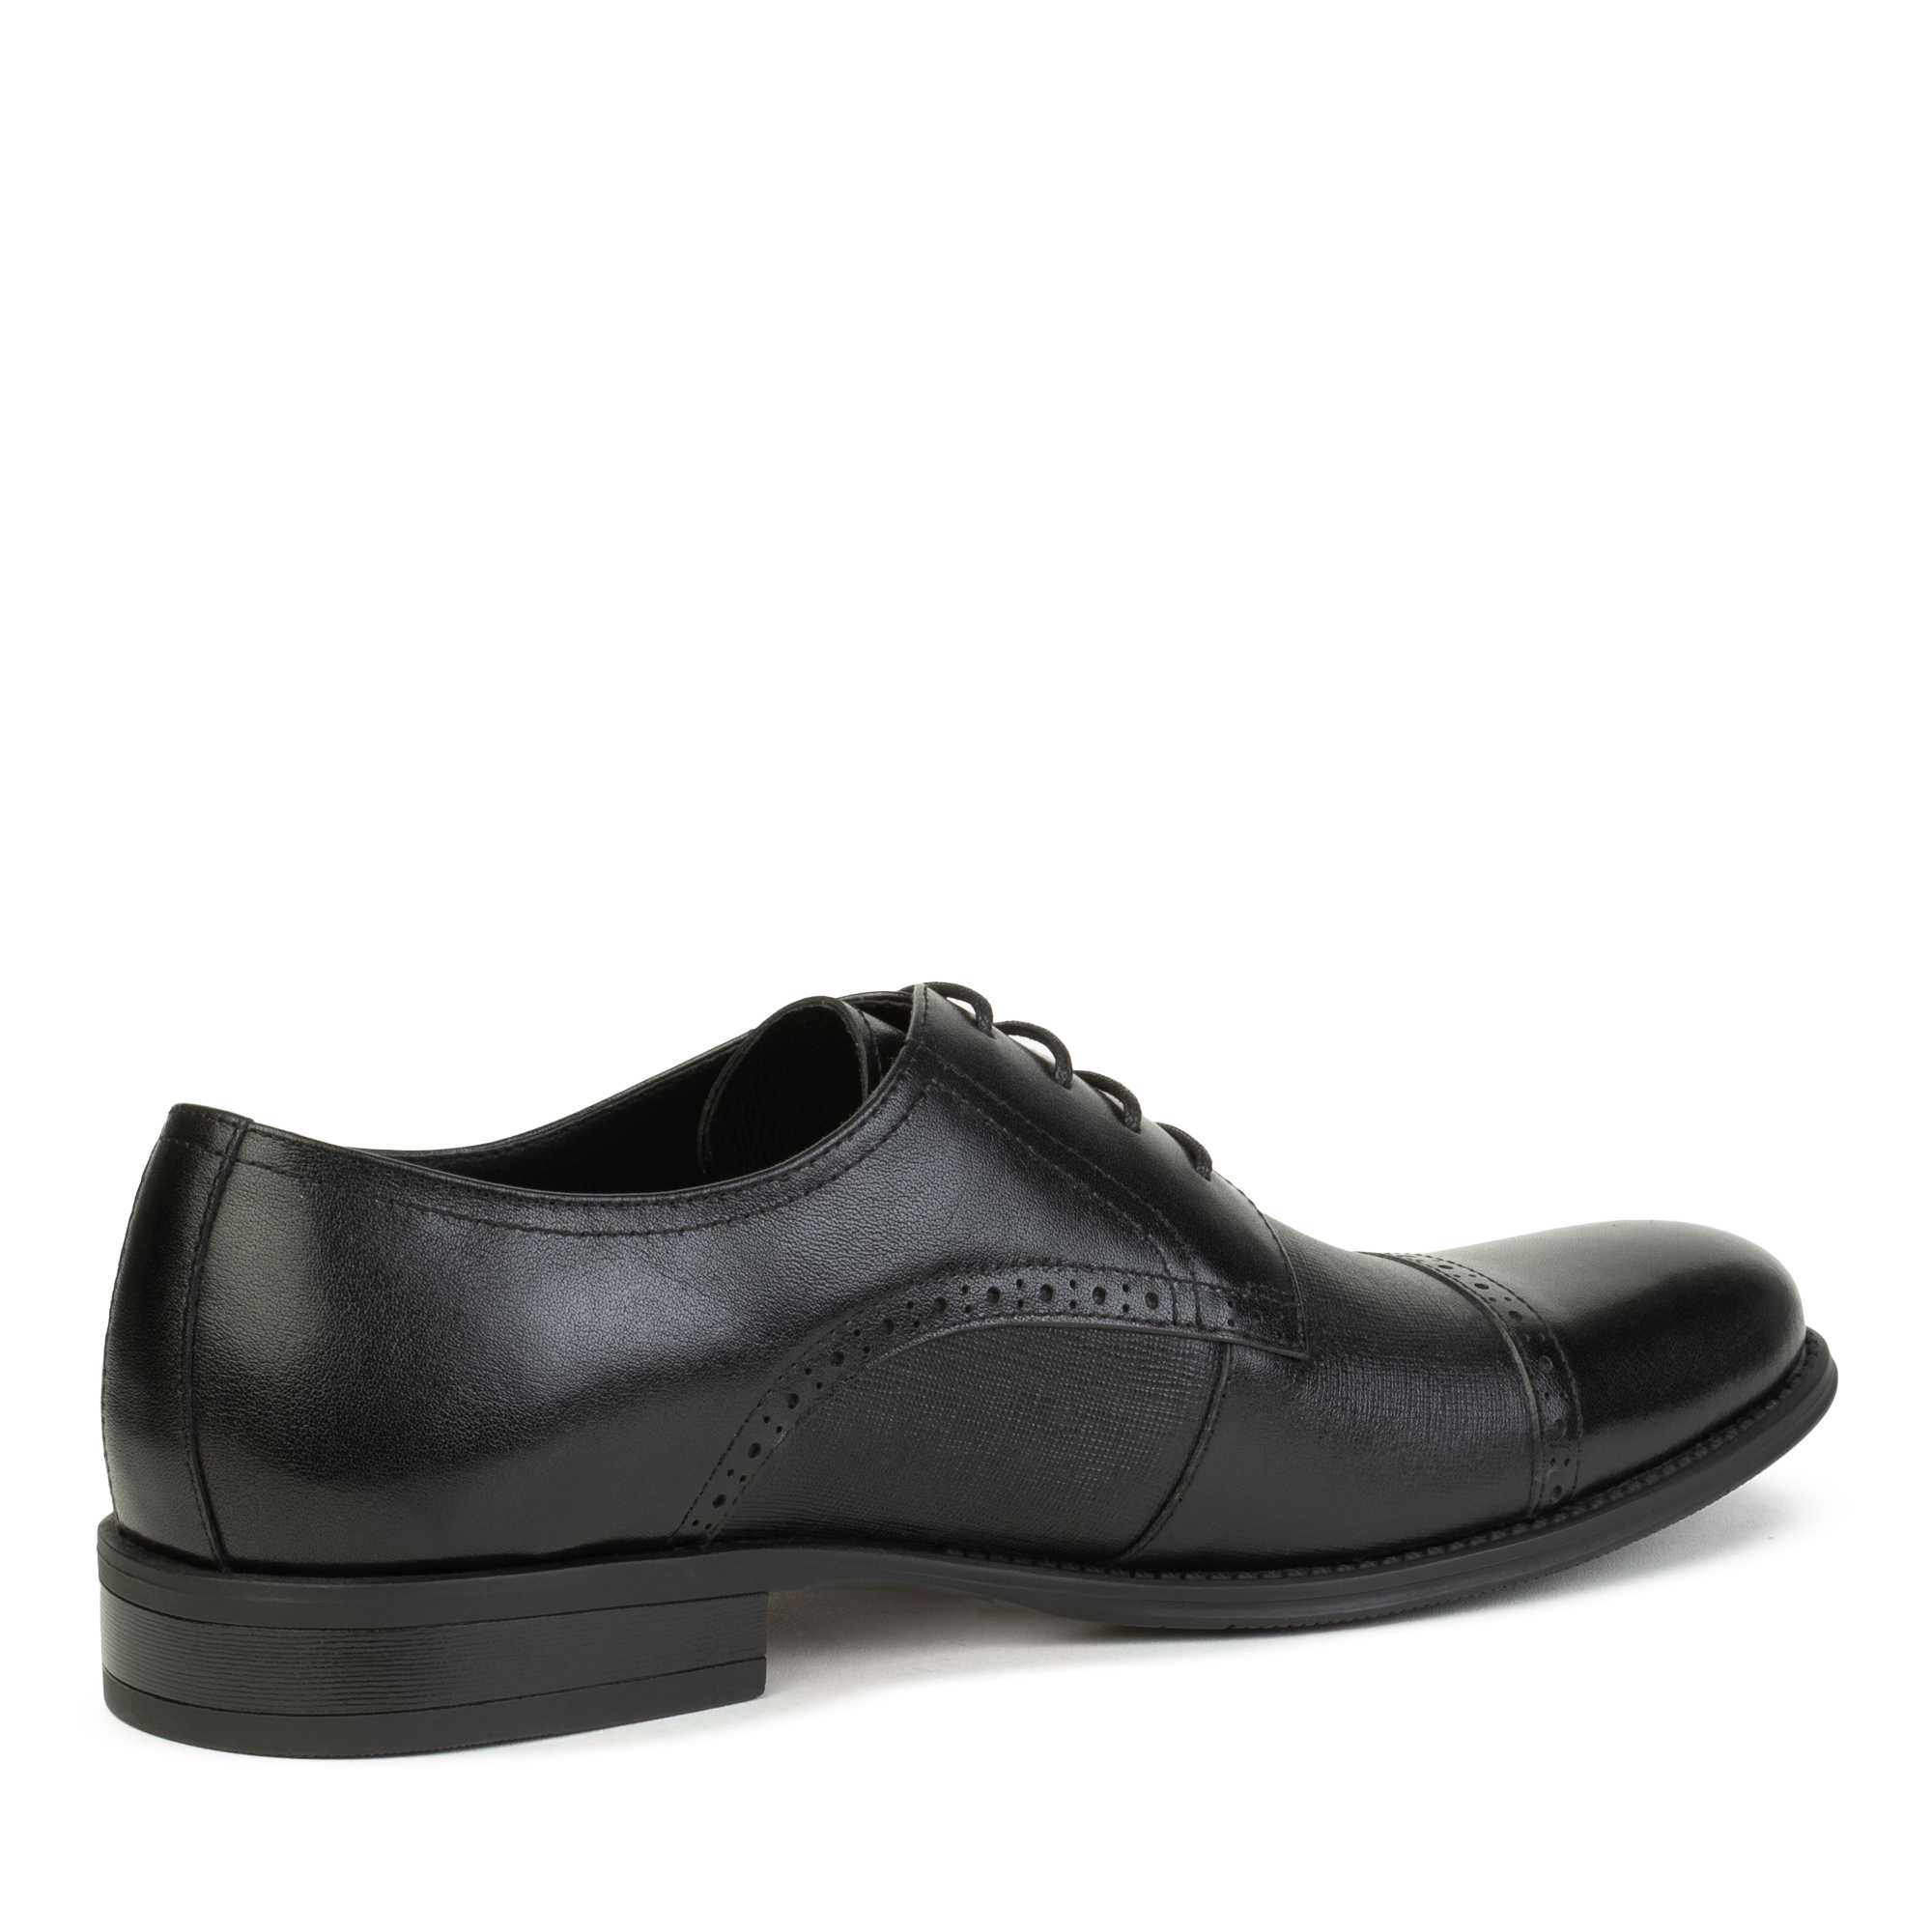 Туфли Thomas Munz 058-686A-1602, цвет черный, размер 40 - фото 3